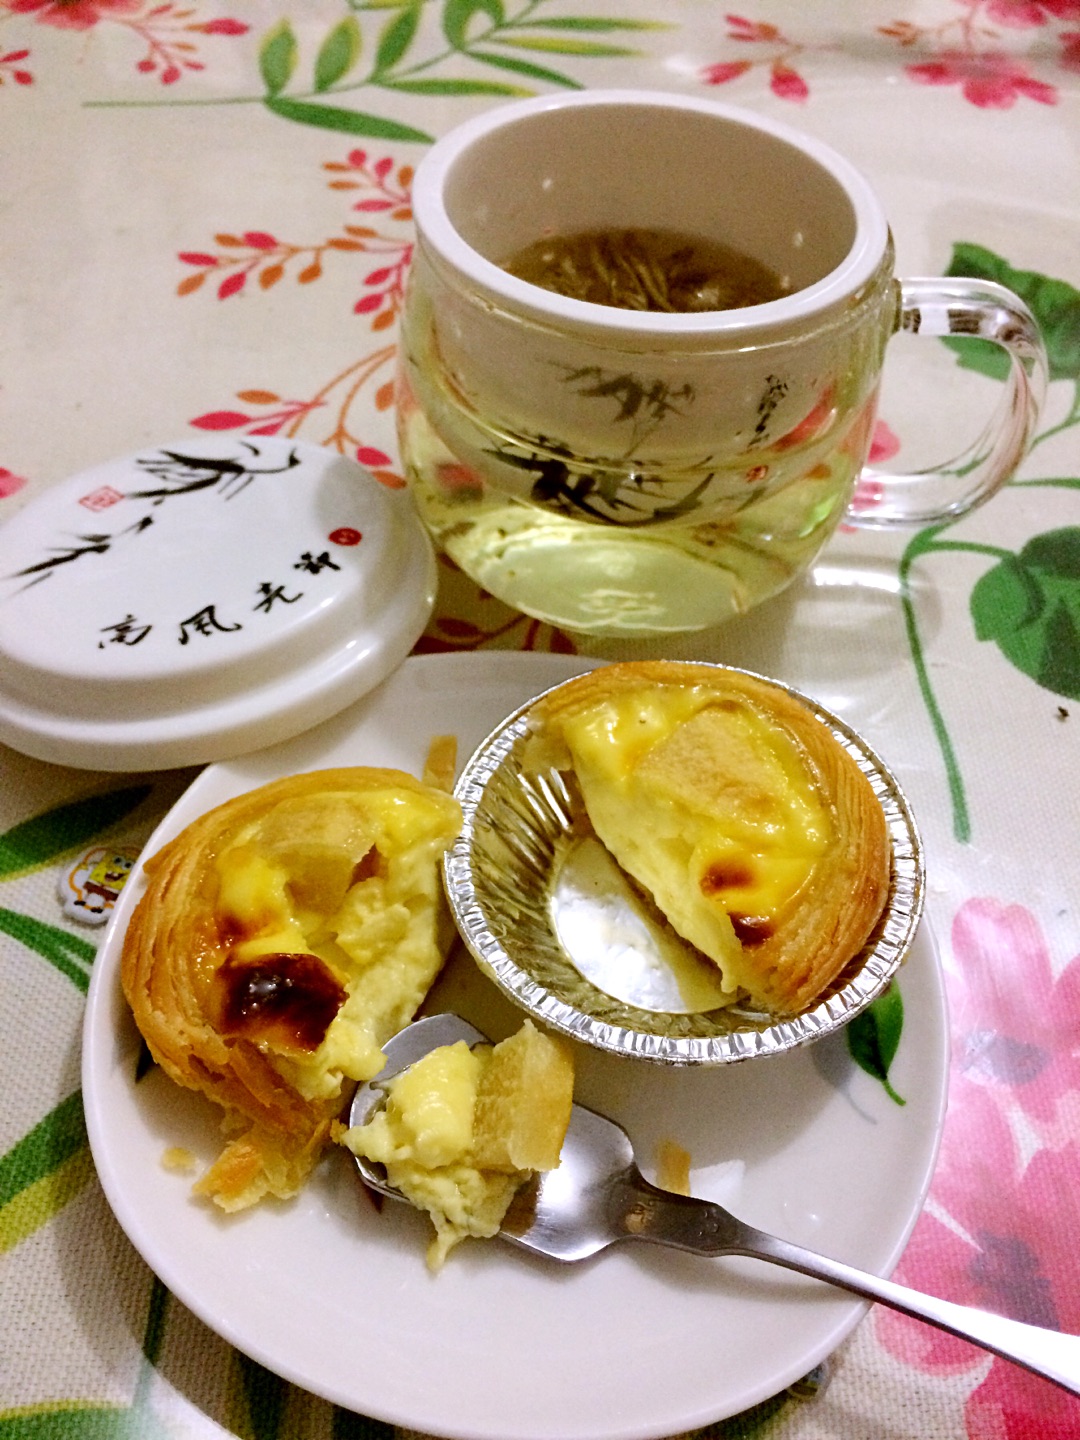 苹果玫瑰蛋挞,苹果玫瑰蛋挞的家常做法 - 美食杰苹果玫瑰蛋挞做法大全